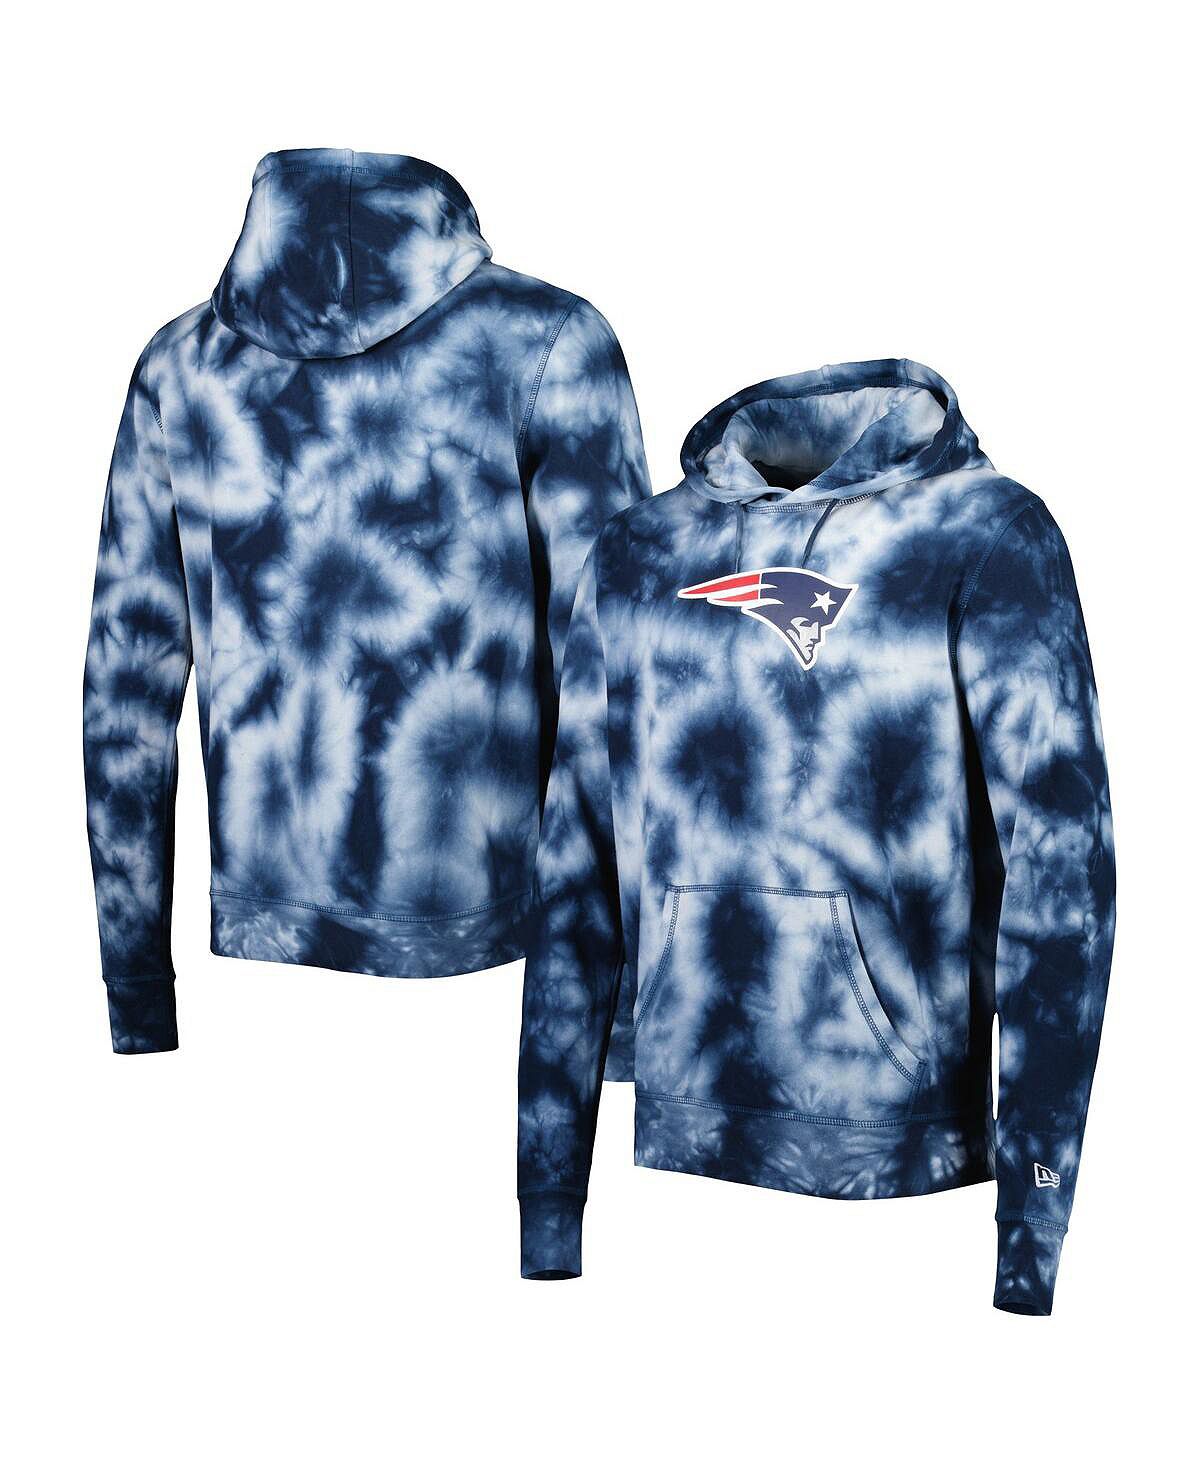 Мужской пуловер с капюшоном темно-синего цвета New England Patriots Team Tie Dye New Era